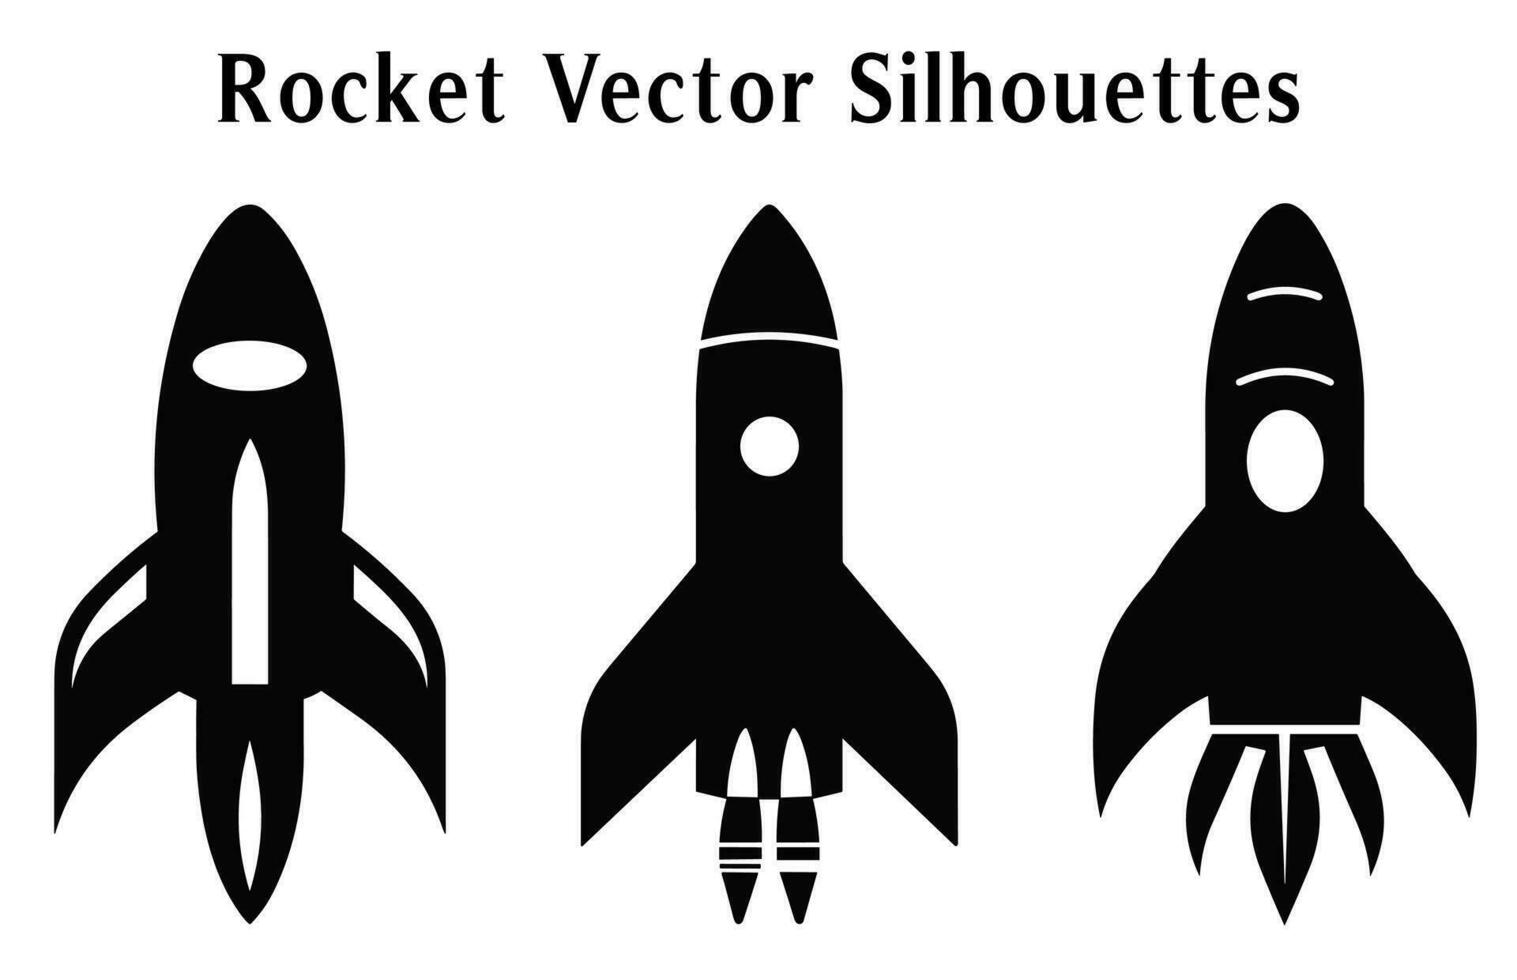 foguete silhuetas vetor livre, conjunto do foguete ícones vetor, lançamento nave espacial e nave espacial silhuetas